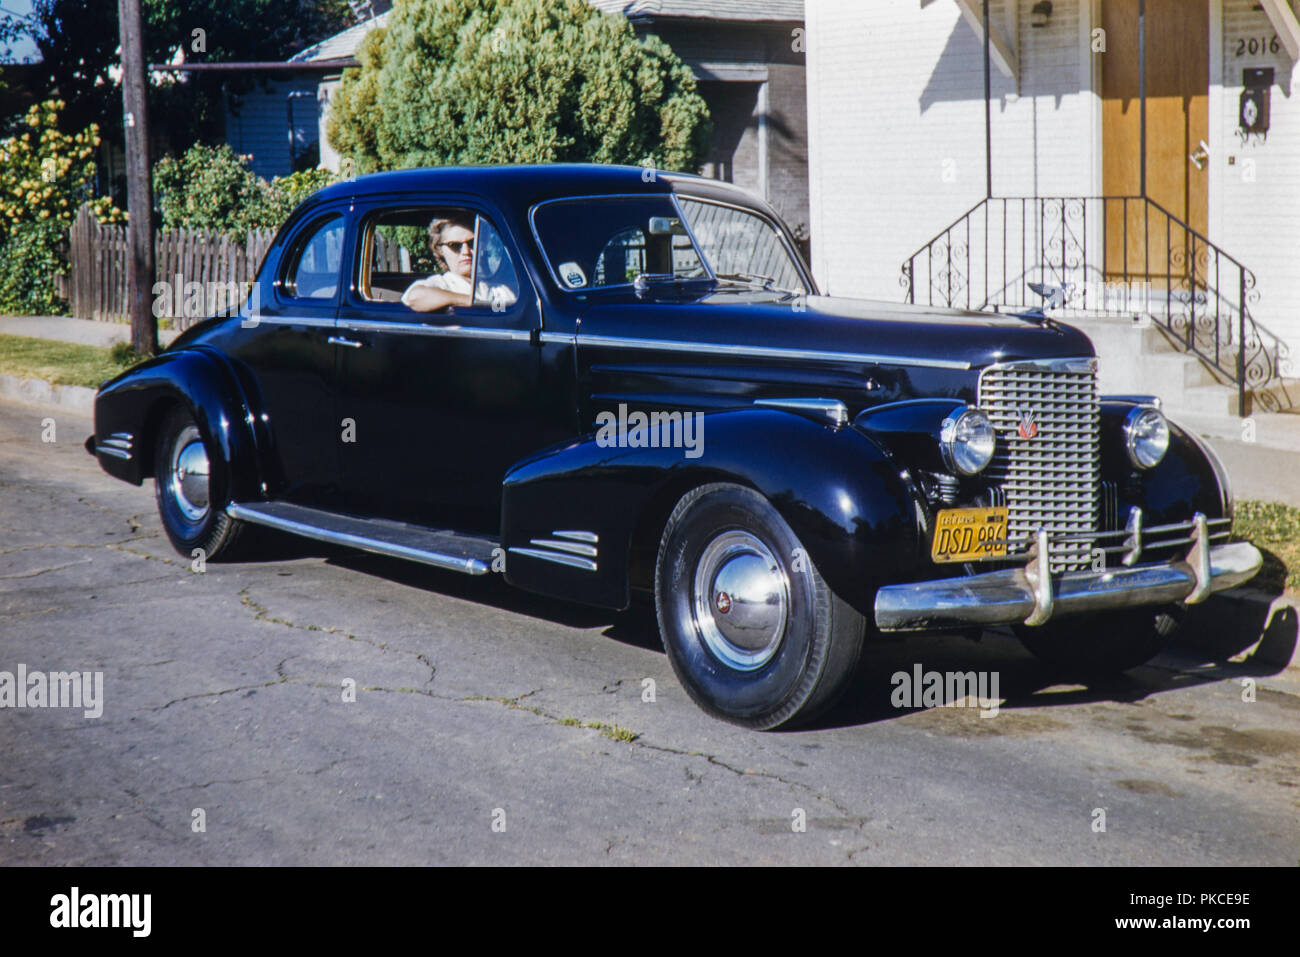 Schwarz und Chrom alten Cadillac Limousine 2 Türen amerikanisches Auto mit einer Kalifornien 1956 Nummernschild. Bild in 1962 getroffen Stockfoto